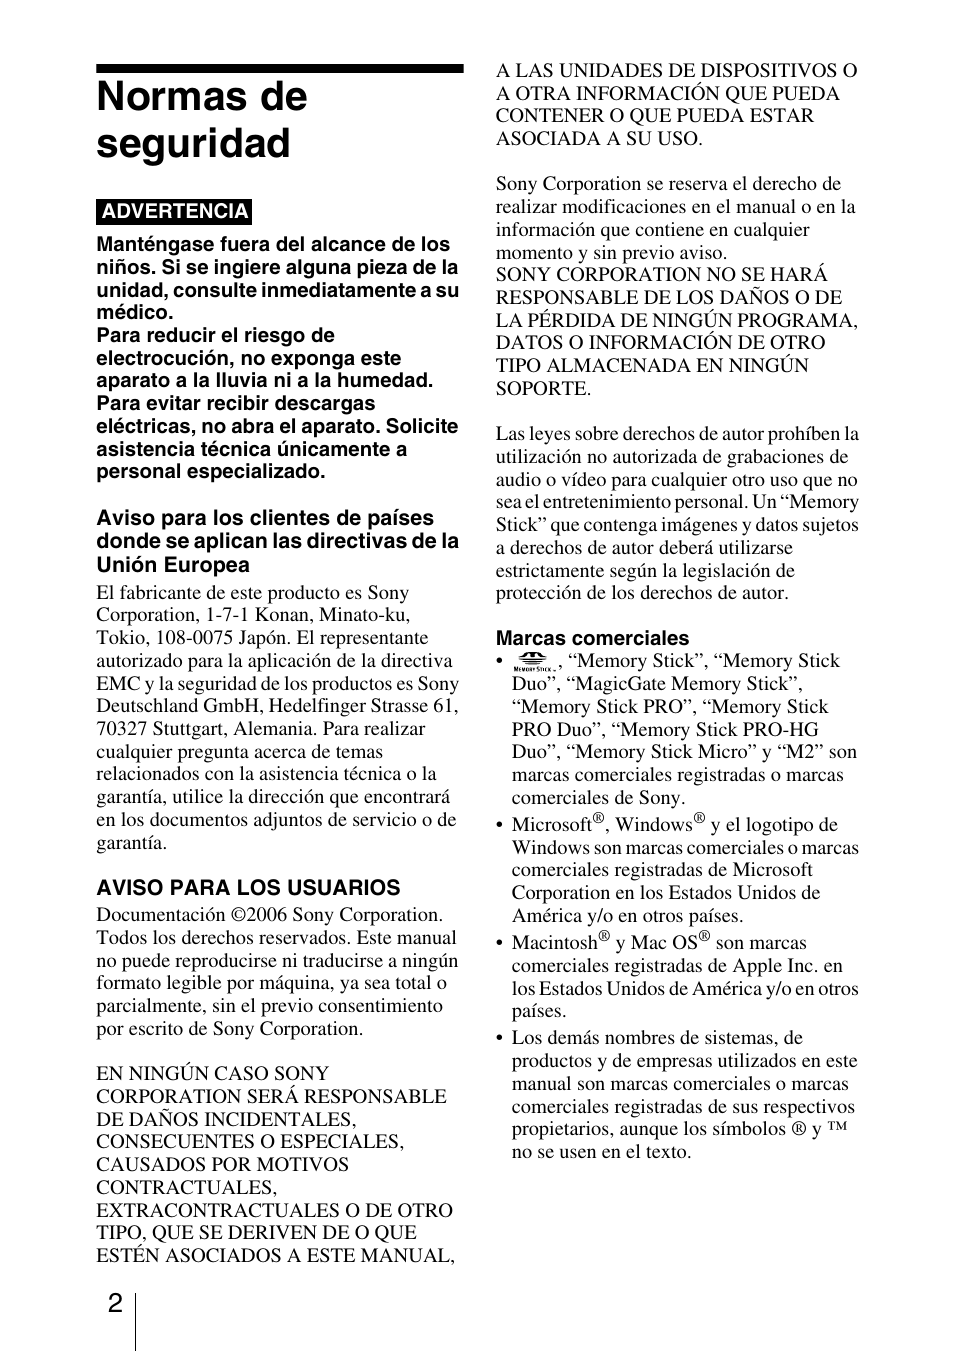 Normas de seguridad | Sony MRW62E-T2 Manual del usuario | Página 2 / 23